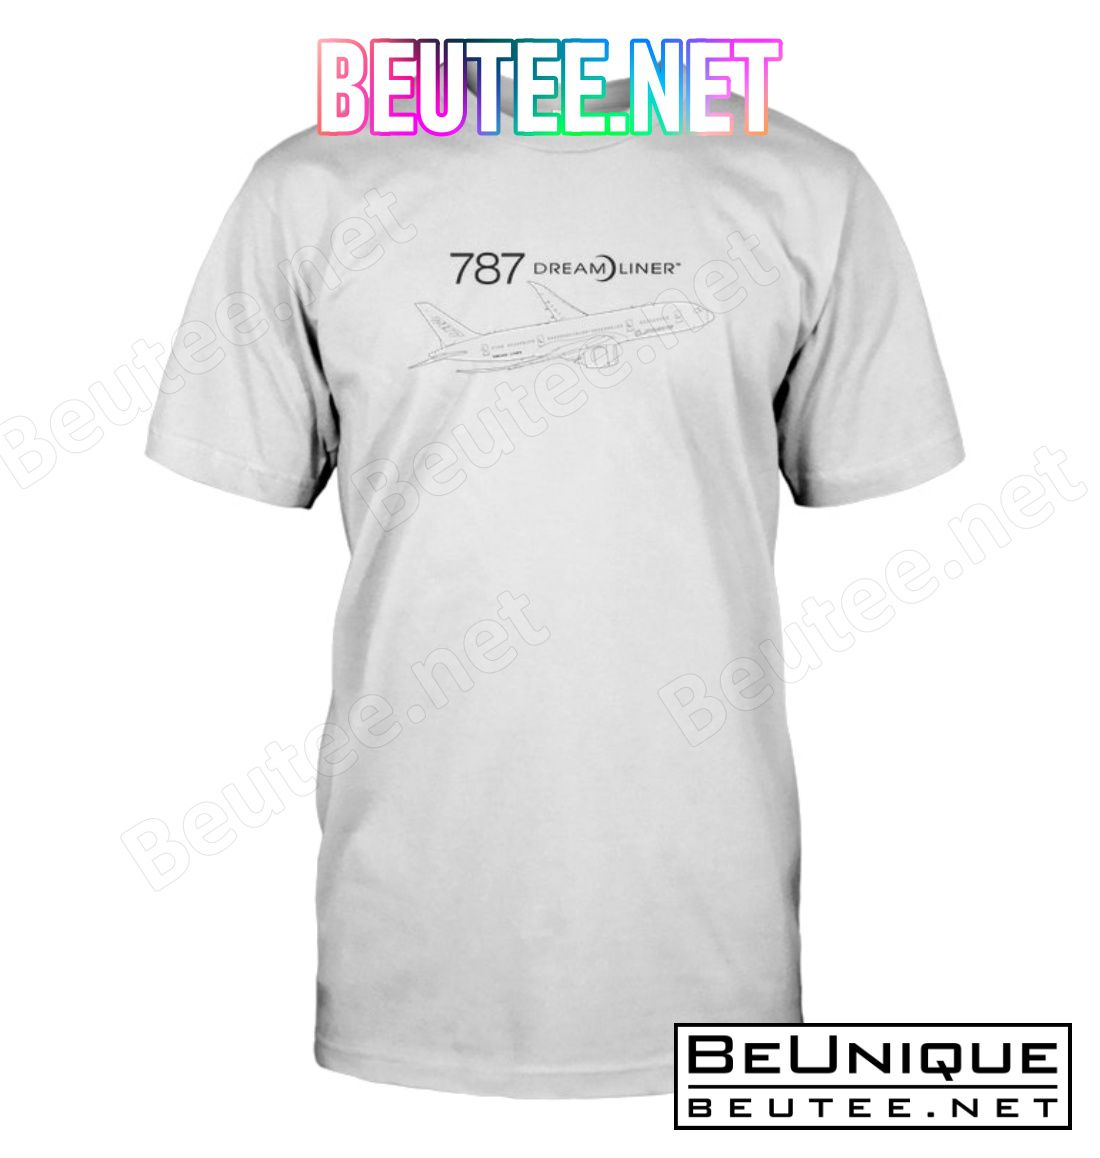 Boeing 787 Dreamliner Shirt